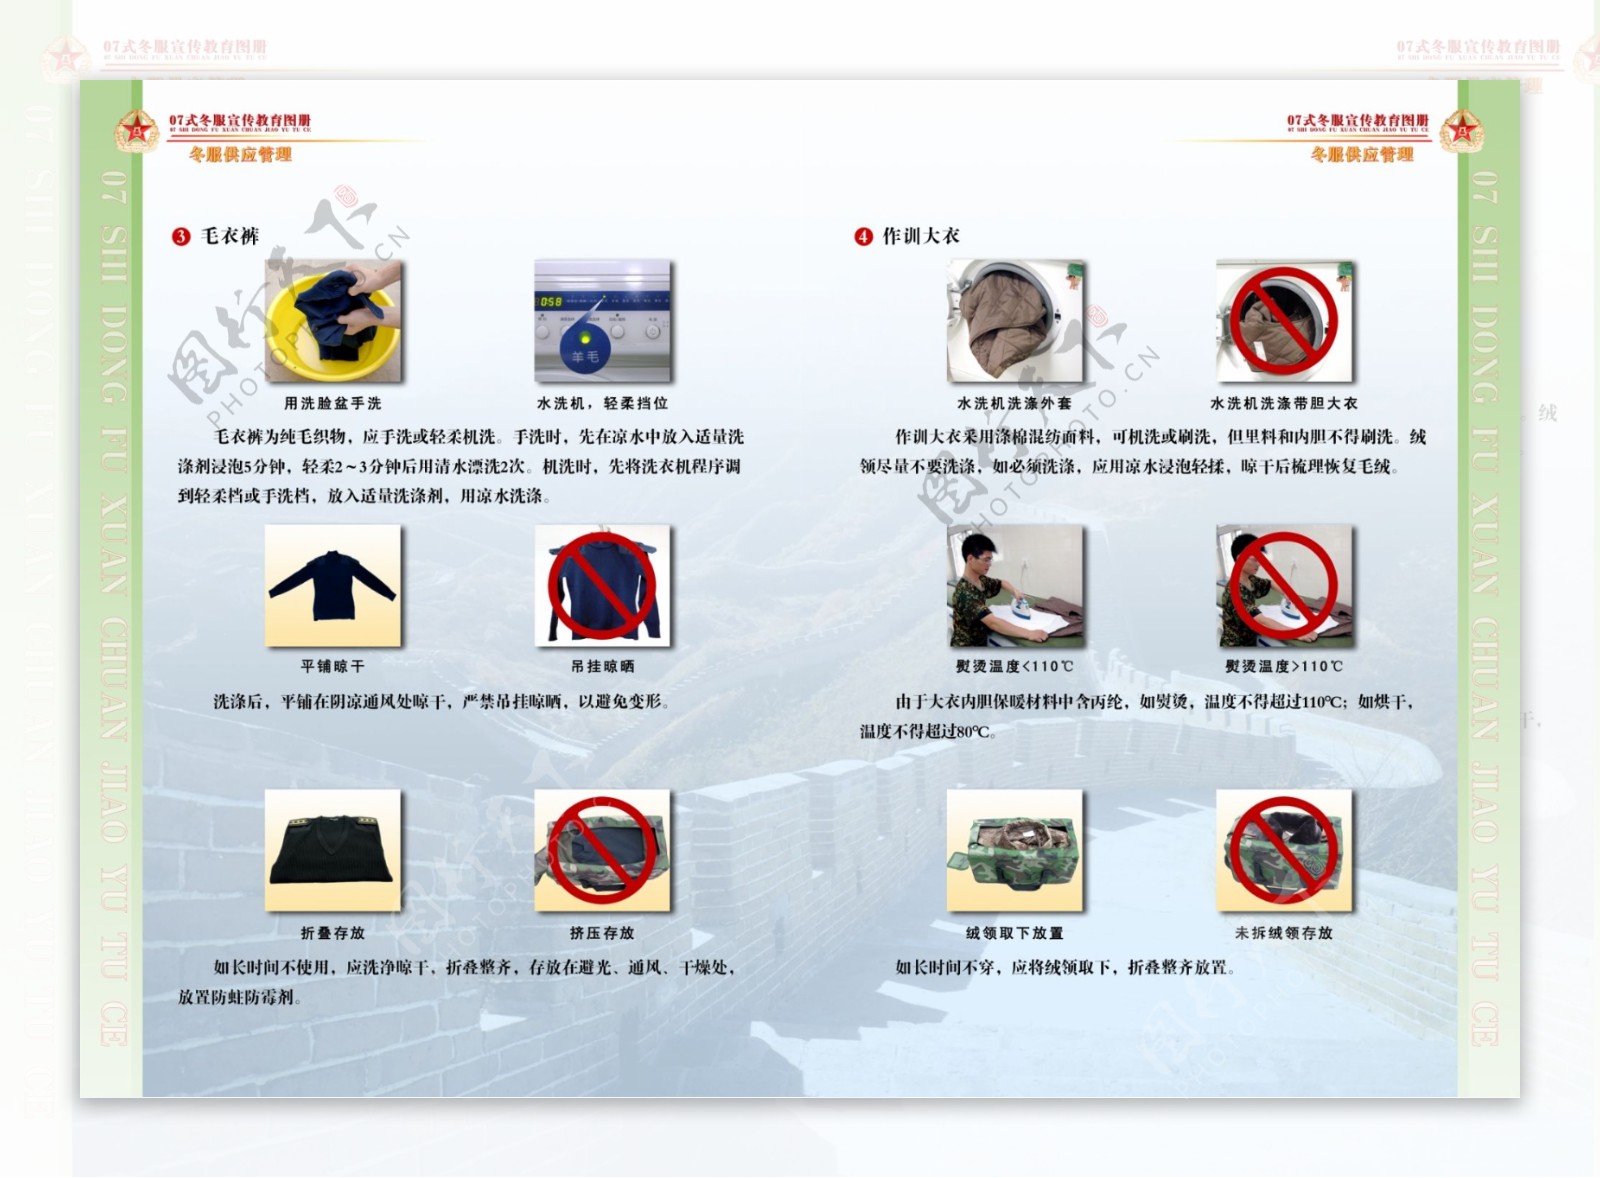 07式军服冬装宣传教育图册15共16幅图片